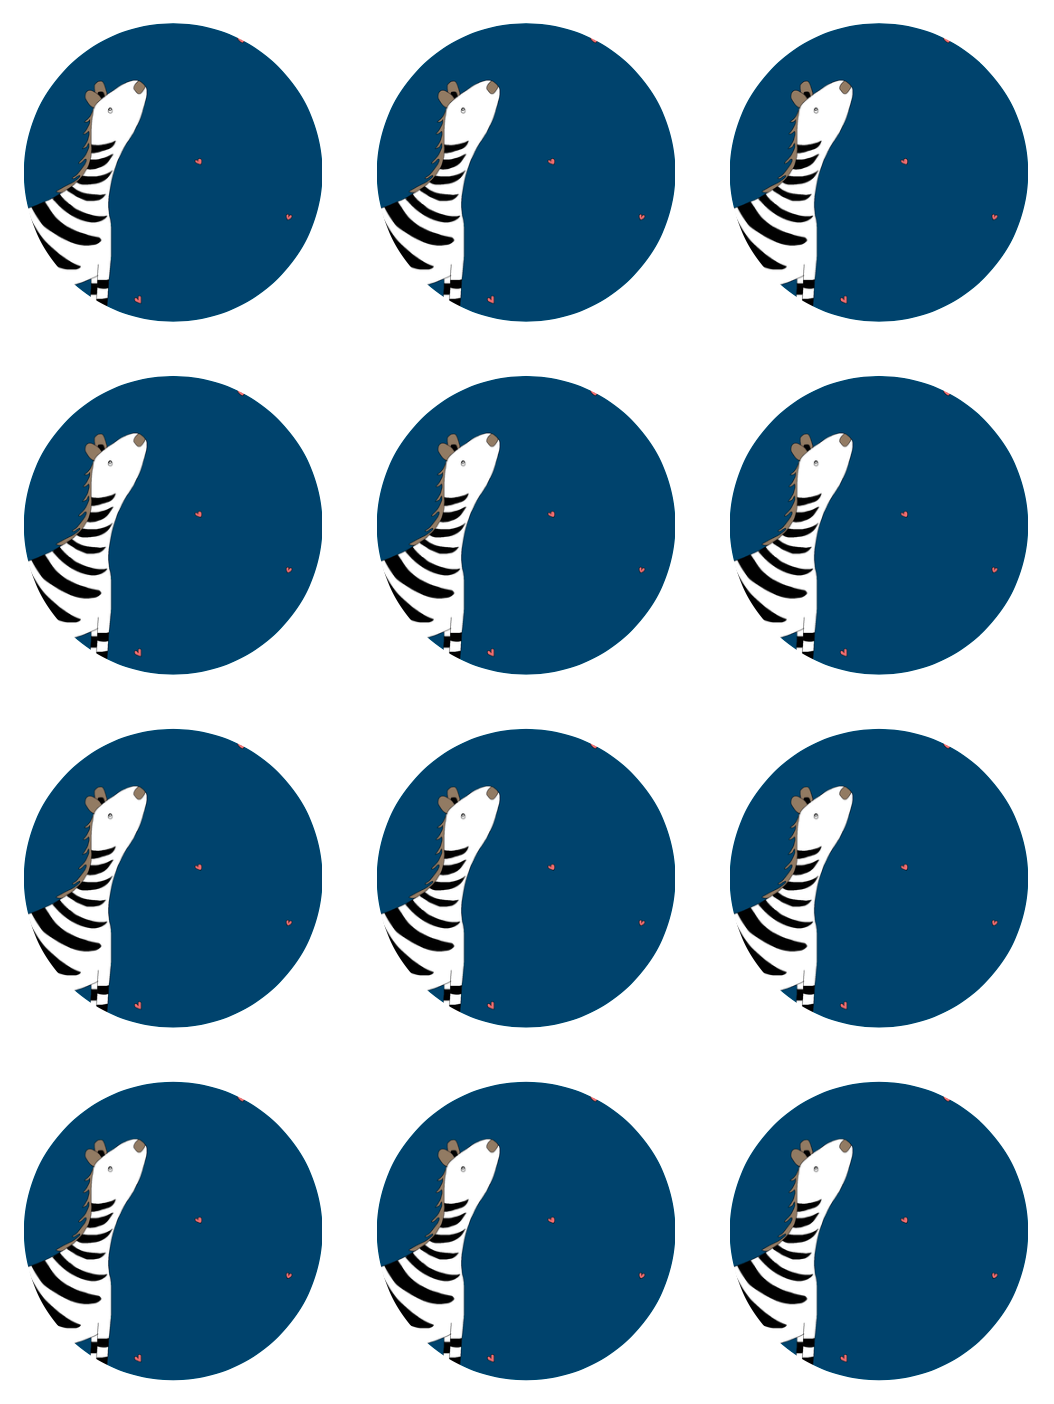 "Zebra” round sticker pack of 12